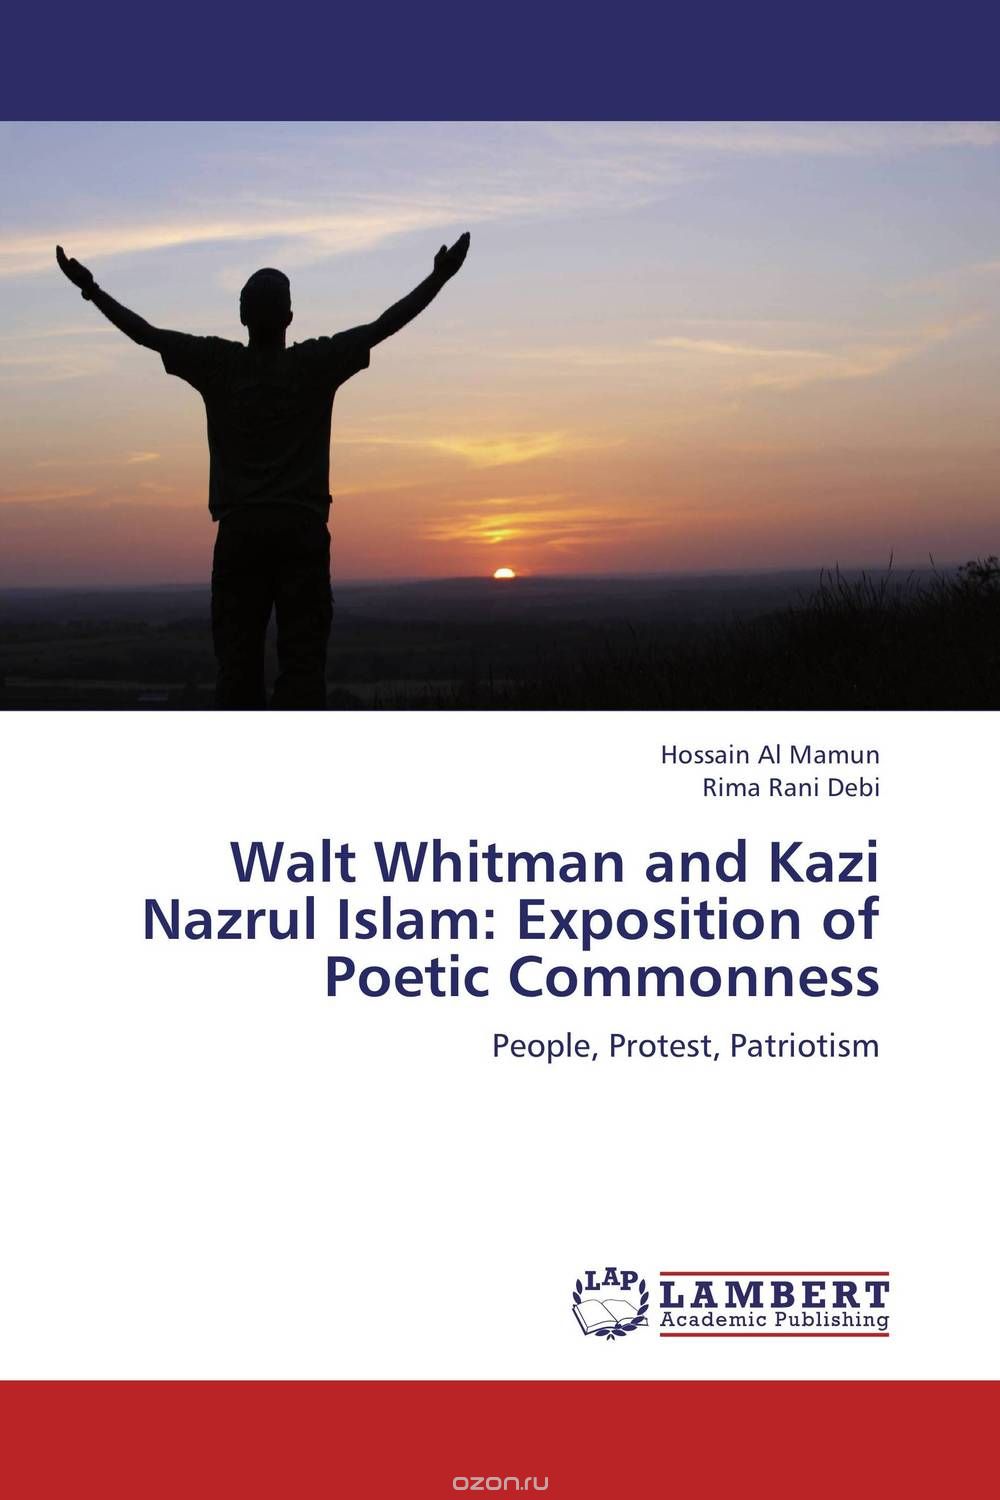 Скачать книгу "Walt Whitman and Kazi Nazrul Islam: Exposition of Poetic Commonness"